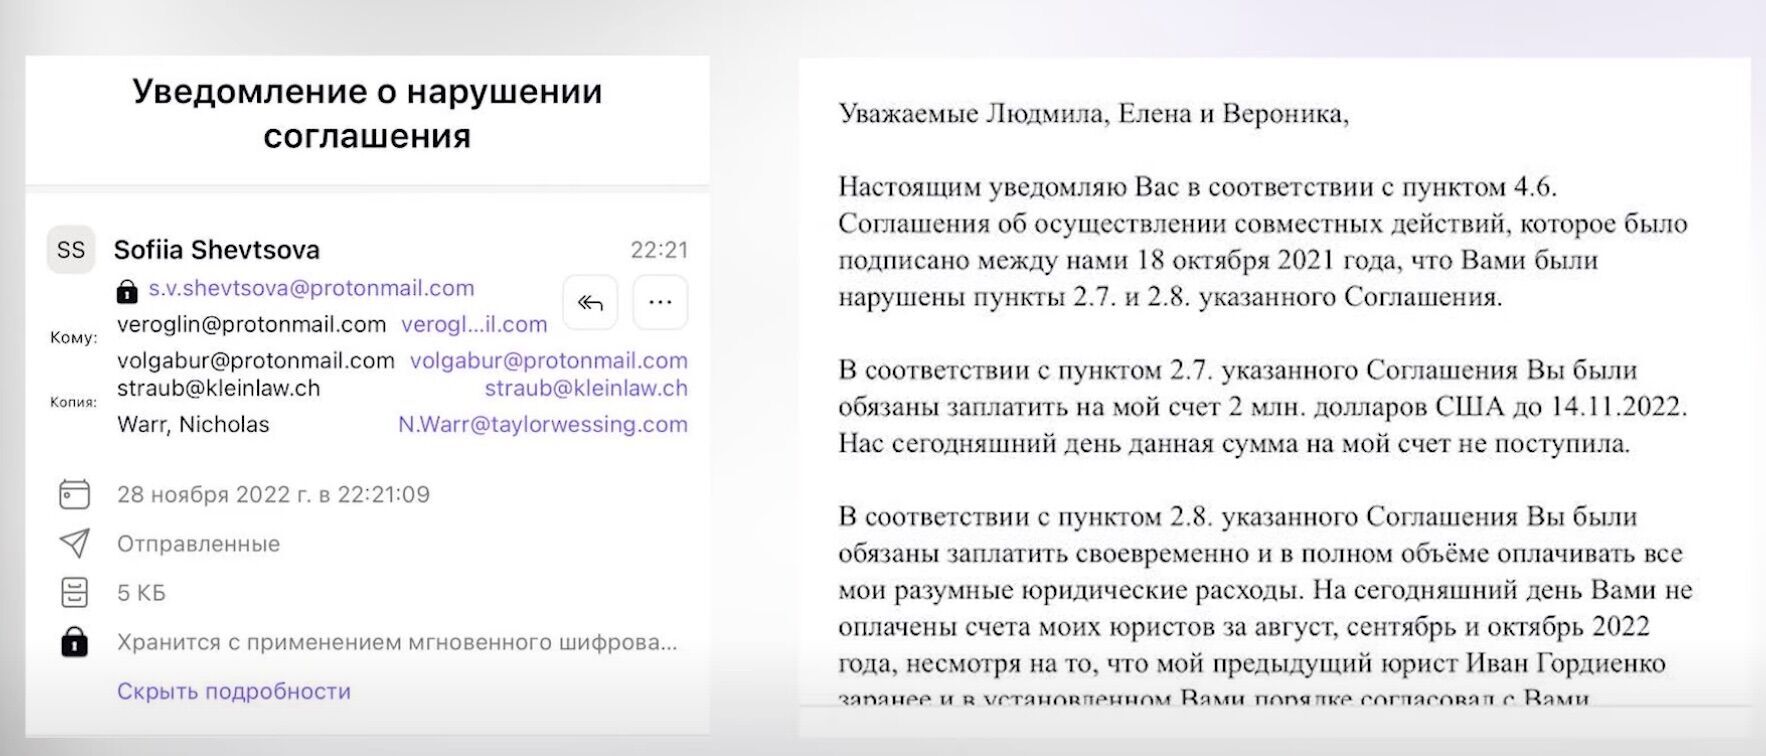 Шевцова, похоже, заключила с Бурлаковыми письменное соглашение